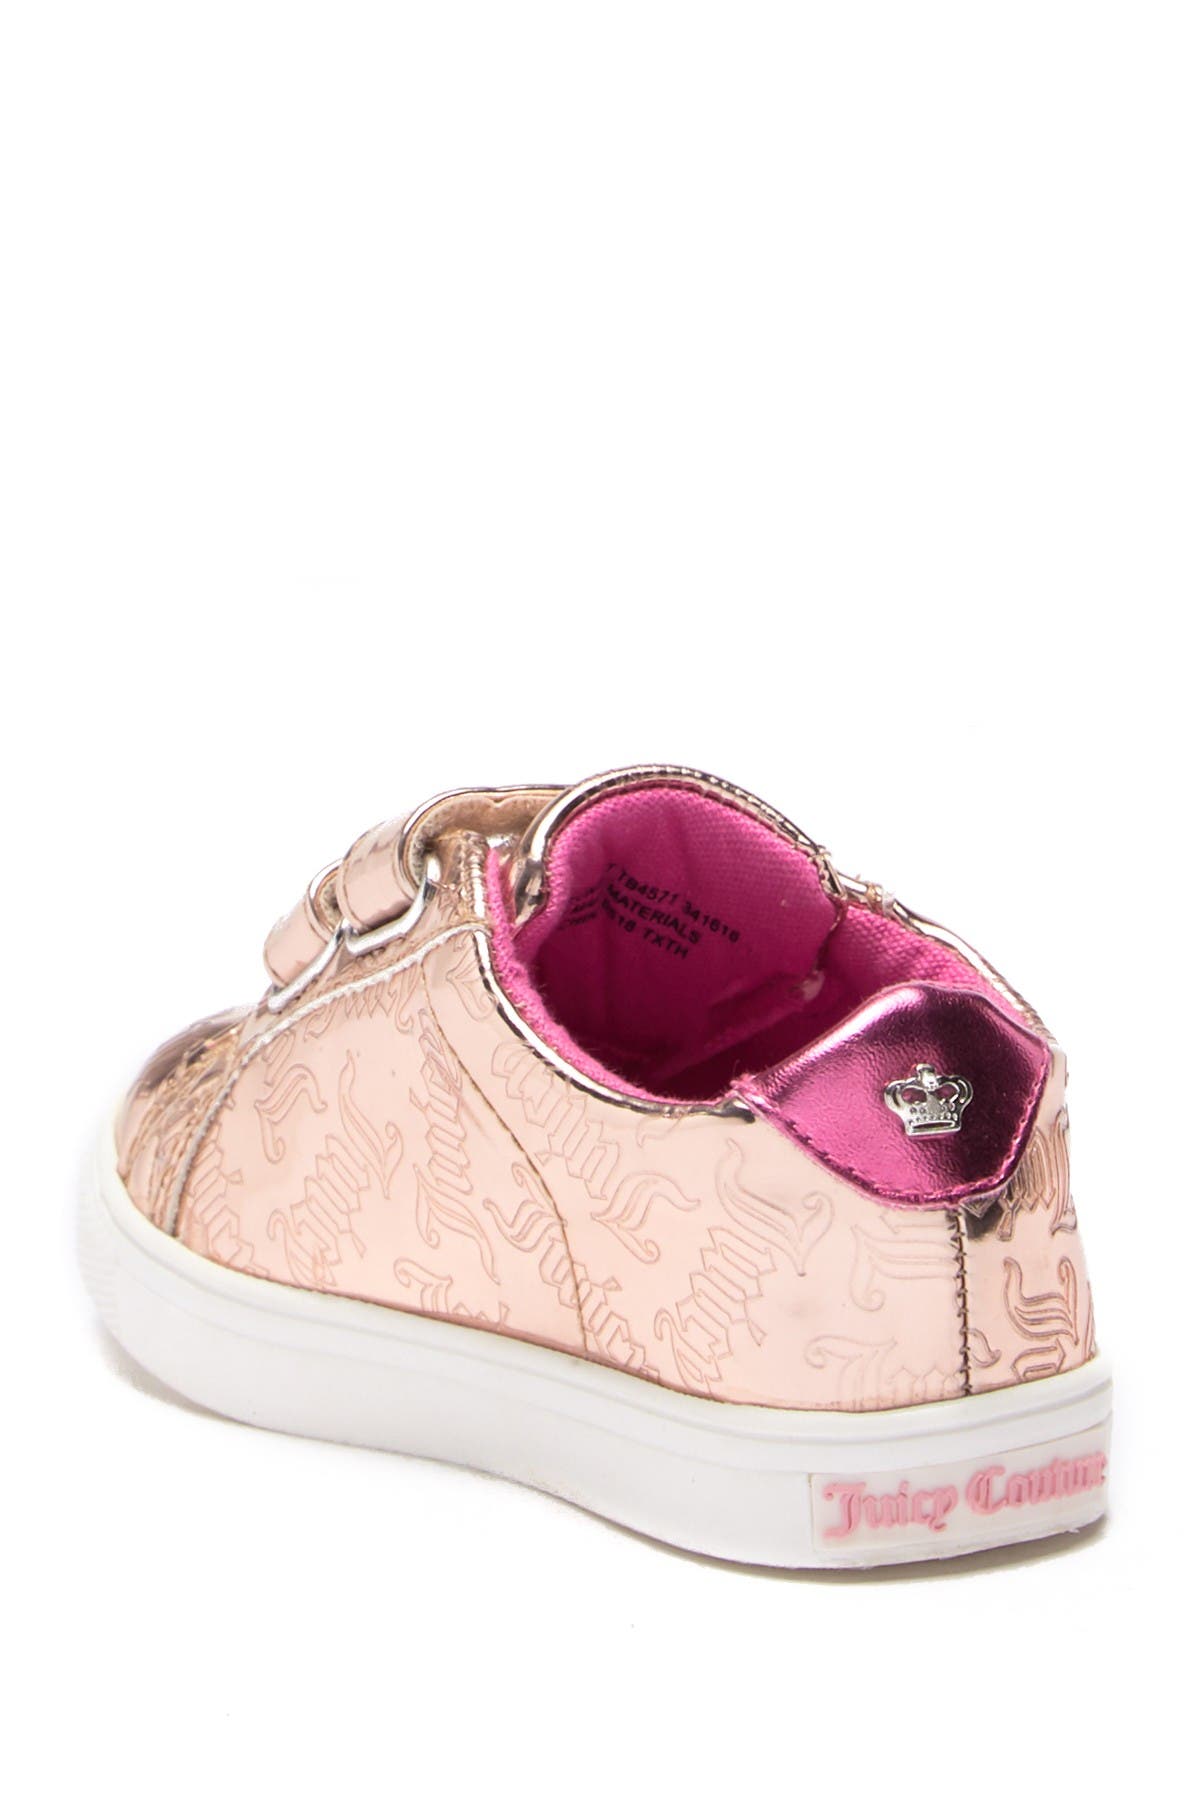 Juicy Couture Kids' Mirror Metallic Sneaker In Pink